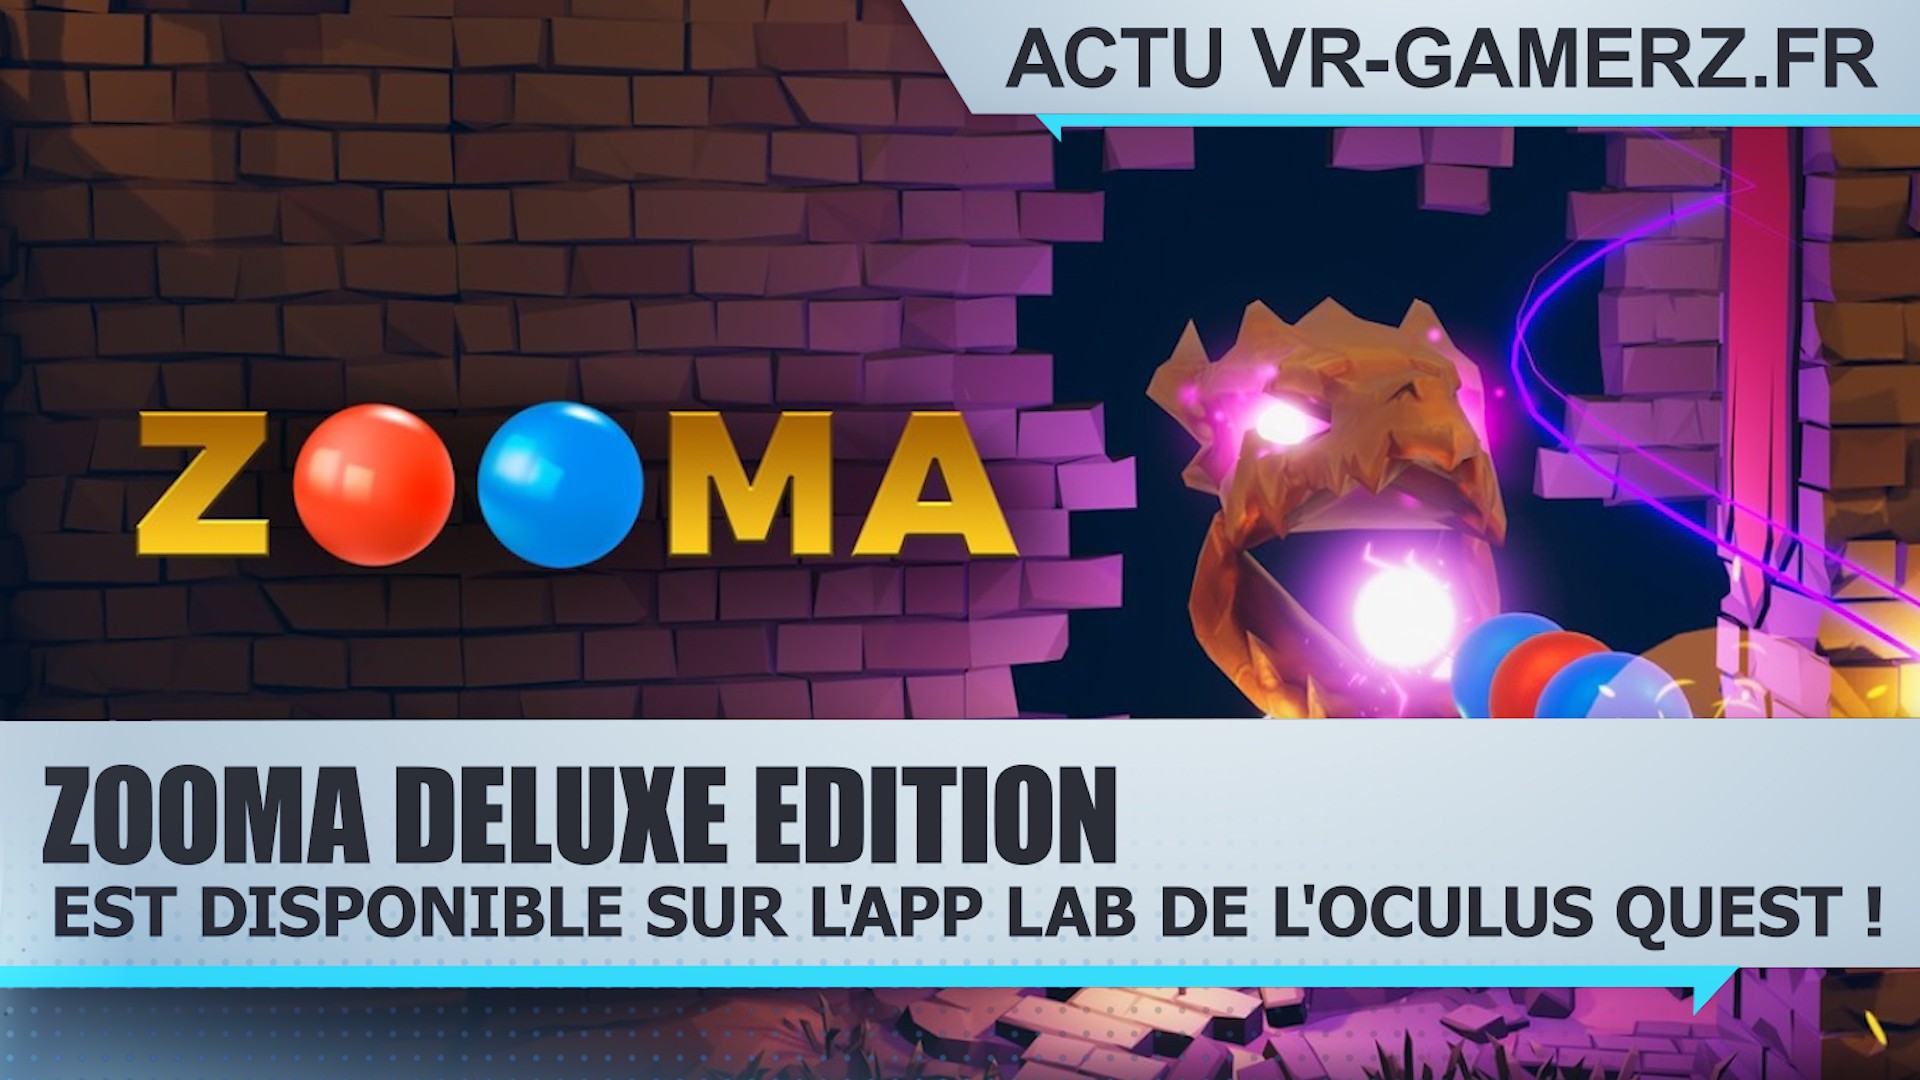 Zooma Deluxe Edition est disponible sur l’App lab de l’Oculus quest !